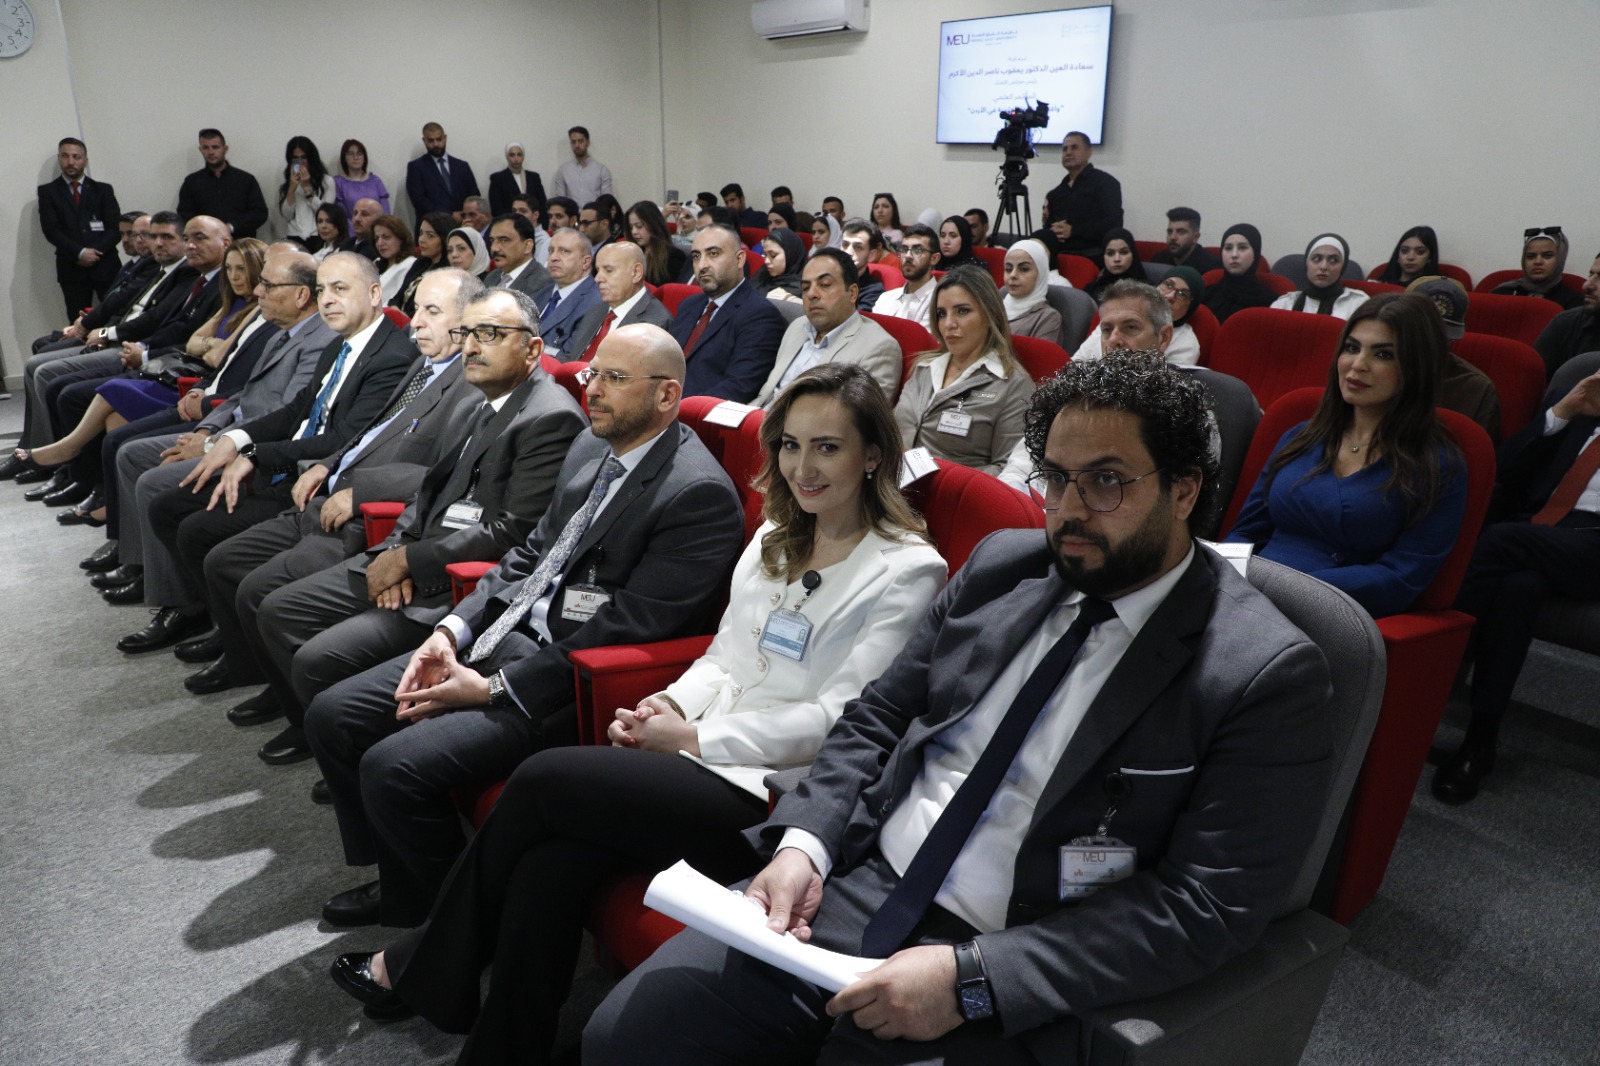 إعلام الشرق الأوسط تنظم مؤتمرًا حول الصحافة العلمية بحضور خبراء من ٦ دول